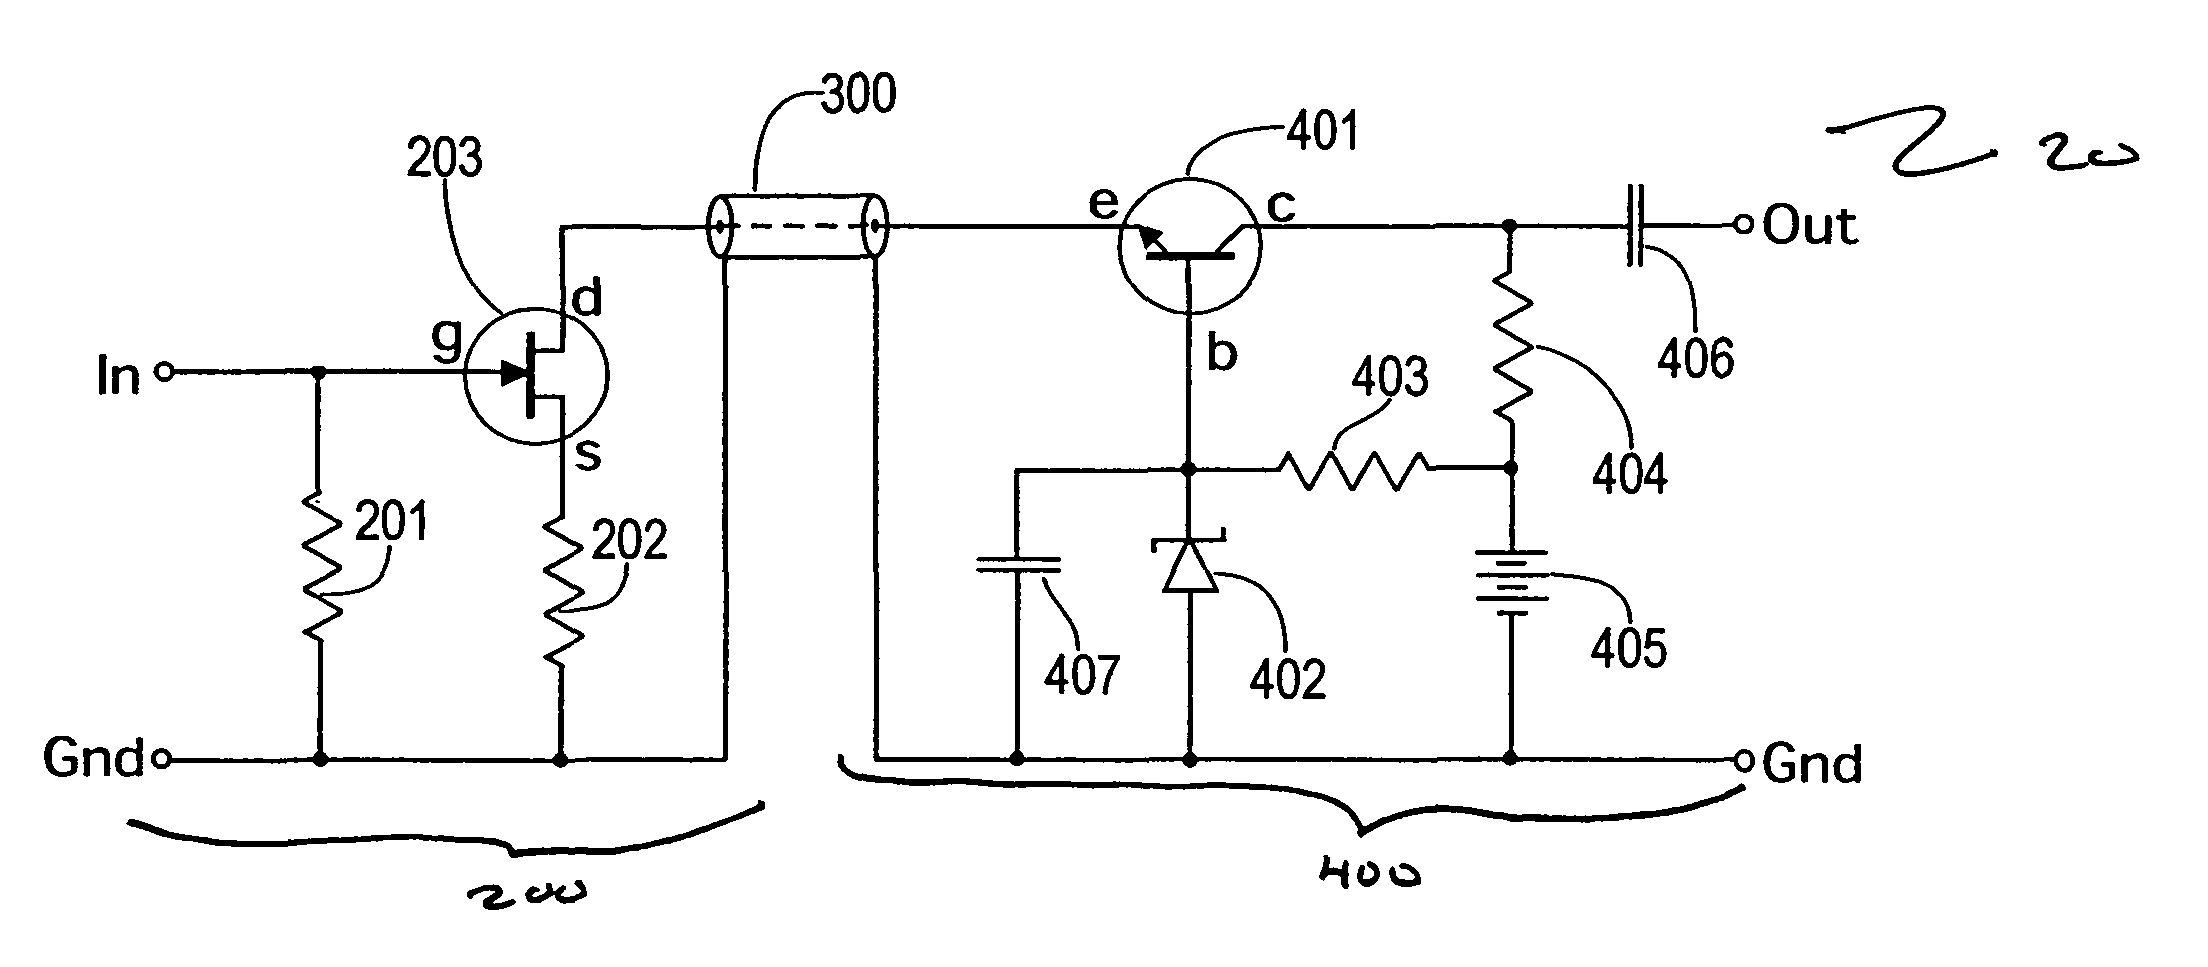 Split cascode line amplifier for current-mode signal transmission